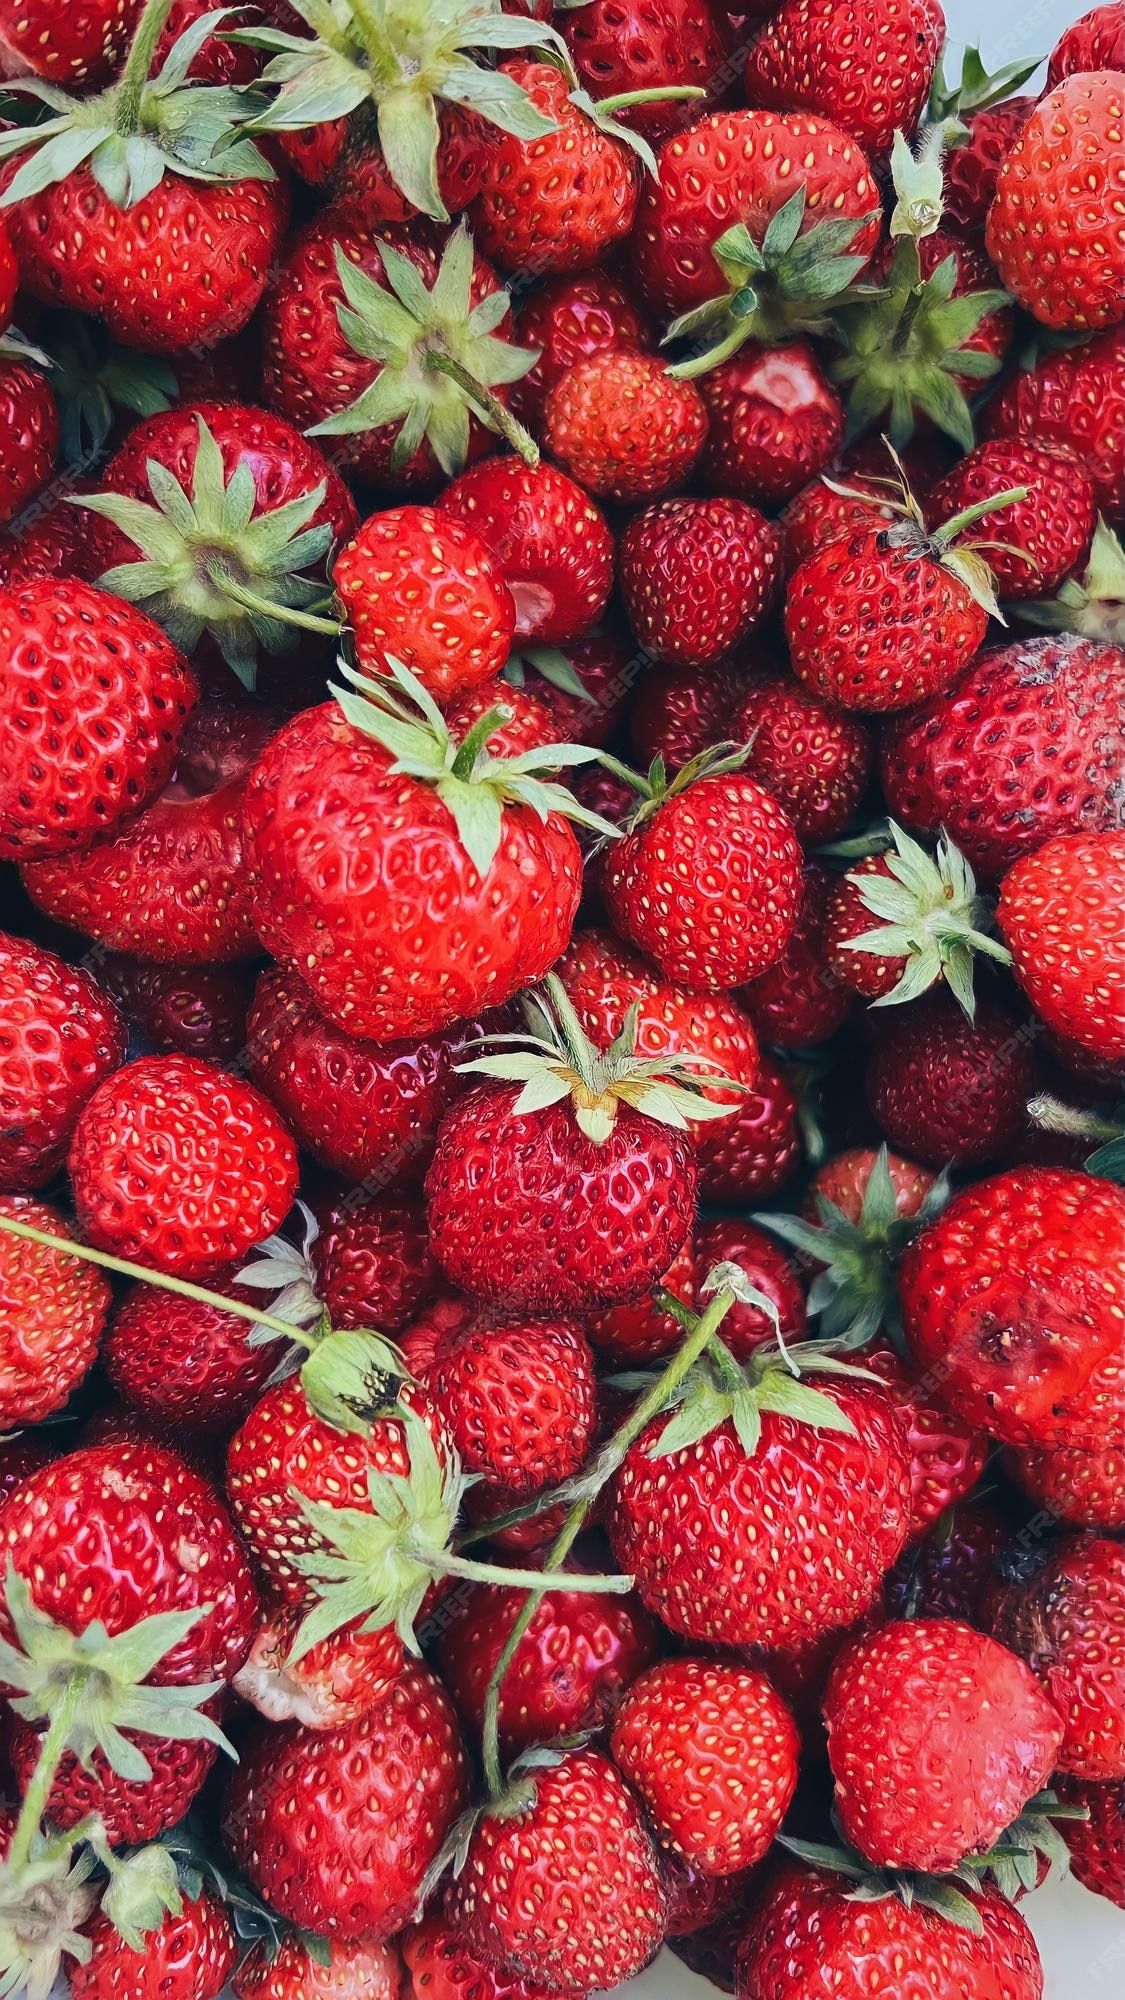  Erdbeeren Hintergrundbild 1125x2000. Rot gefärbter hintergrund mit mehreren erdbeeren